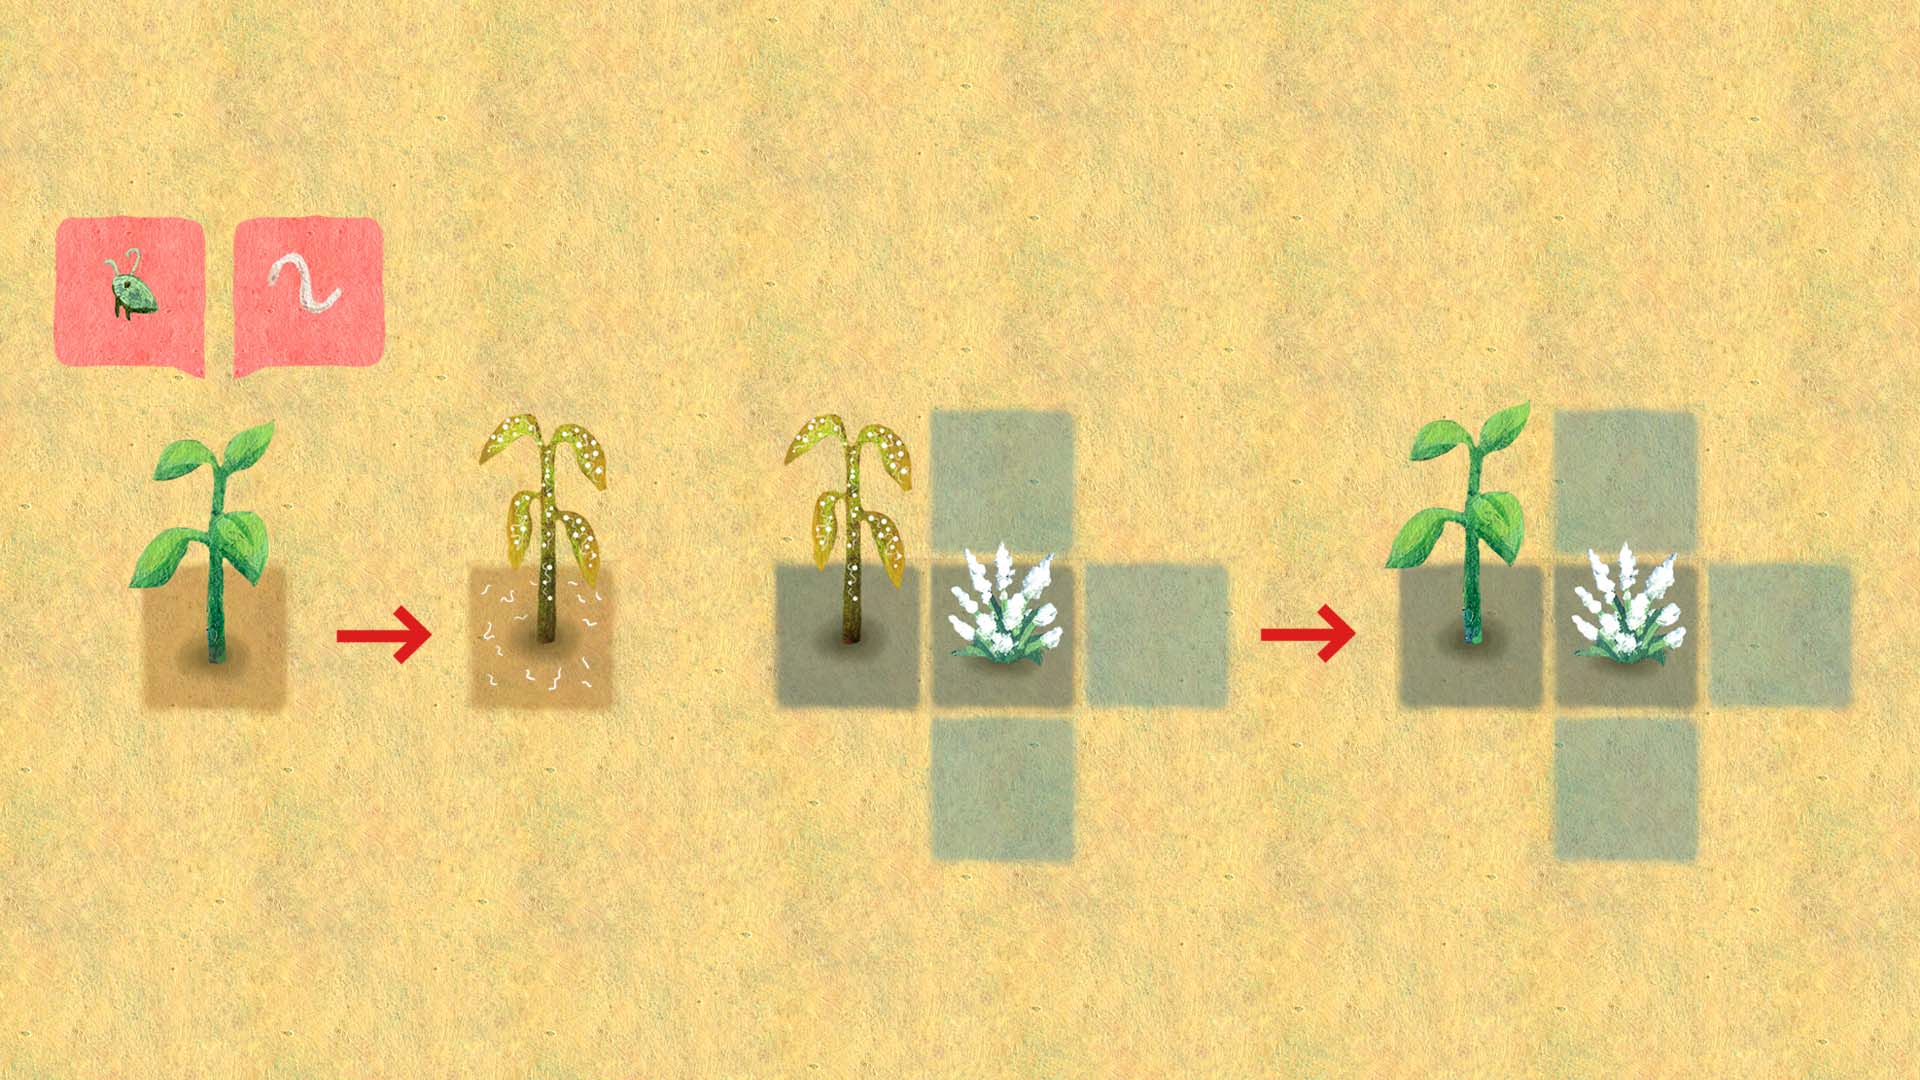 Links: Nutzpflanze die von Blattläusen und Fadenwürmern befallen ist. Rechts: Die unterstützende Pflanze schützt die Pflanze vor Blattläusen